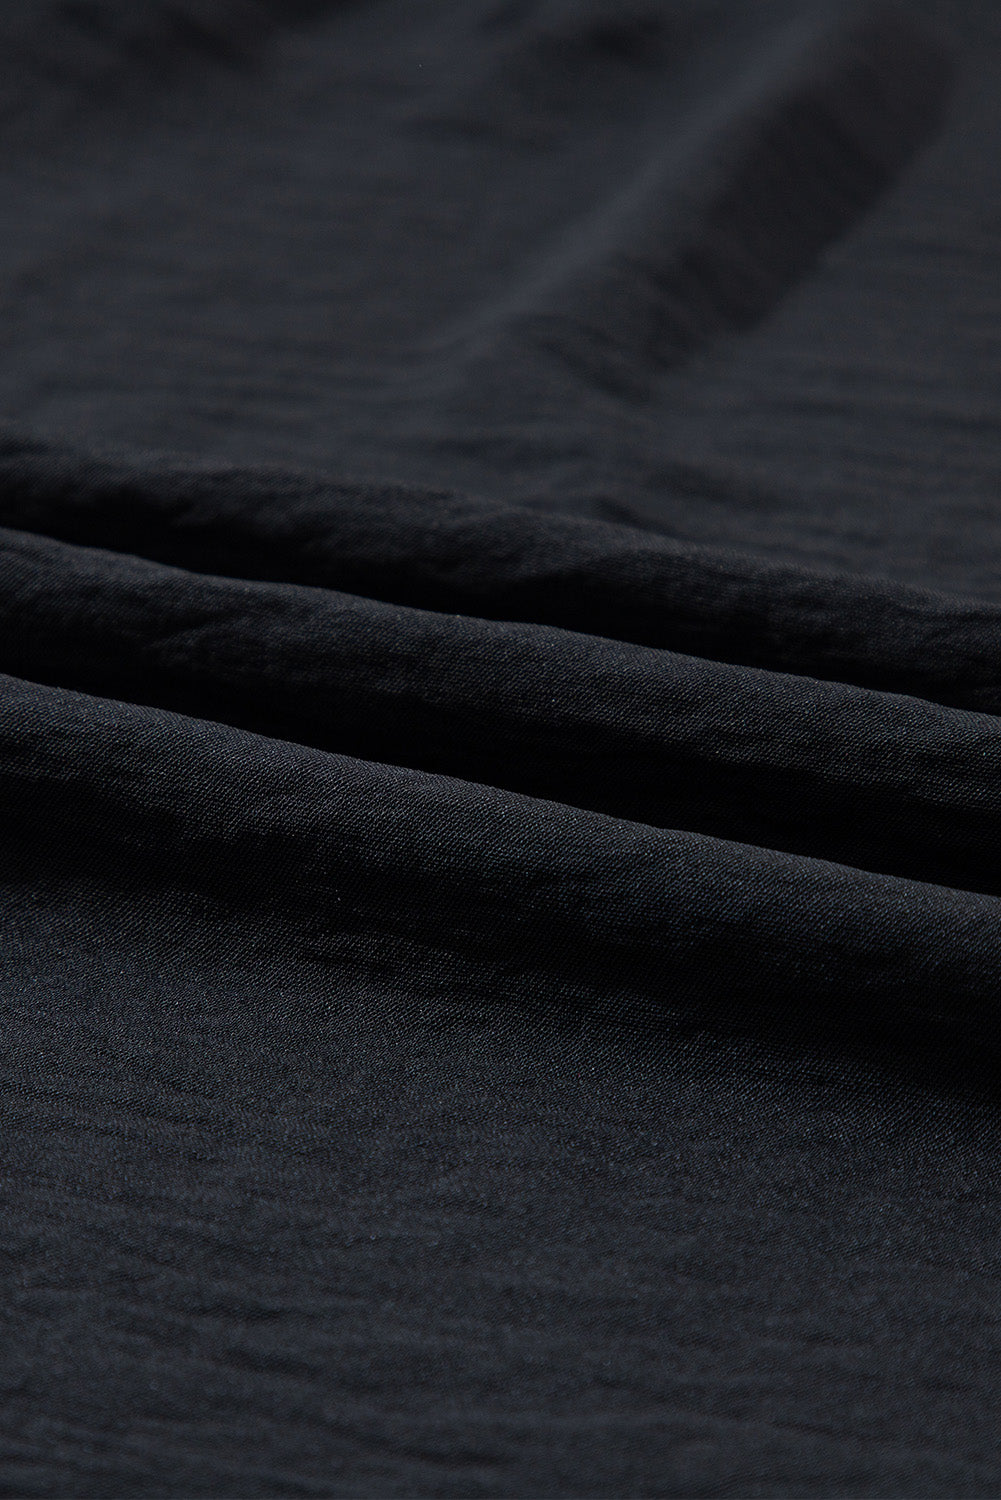 Črna enobarvna prestavna mini obleka brez rokavov z naborki